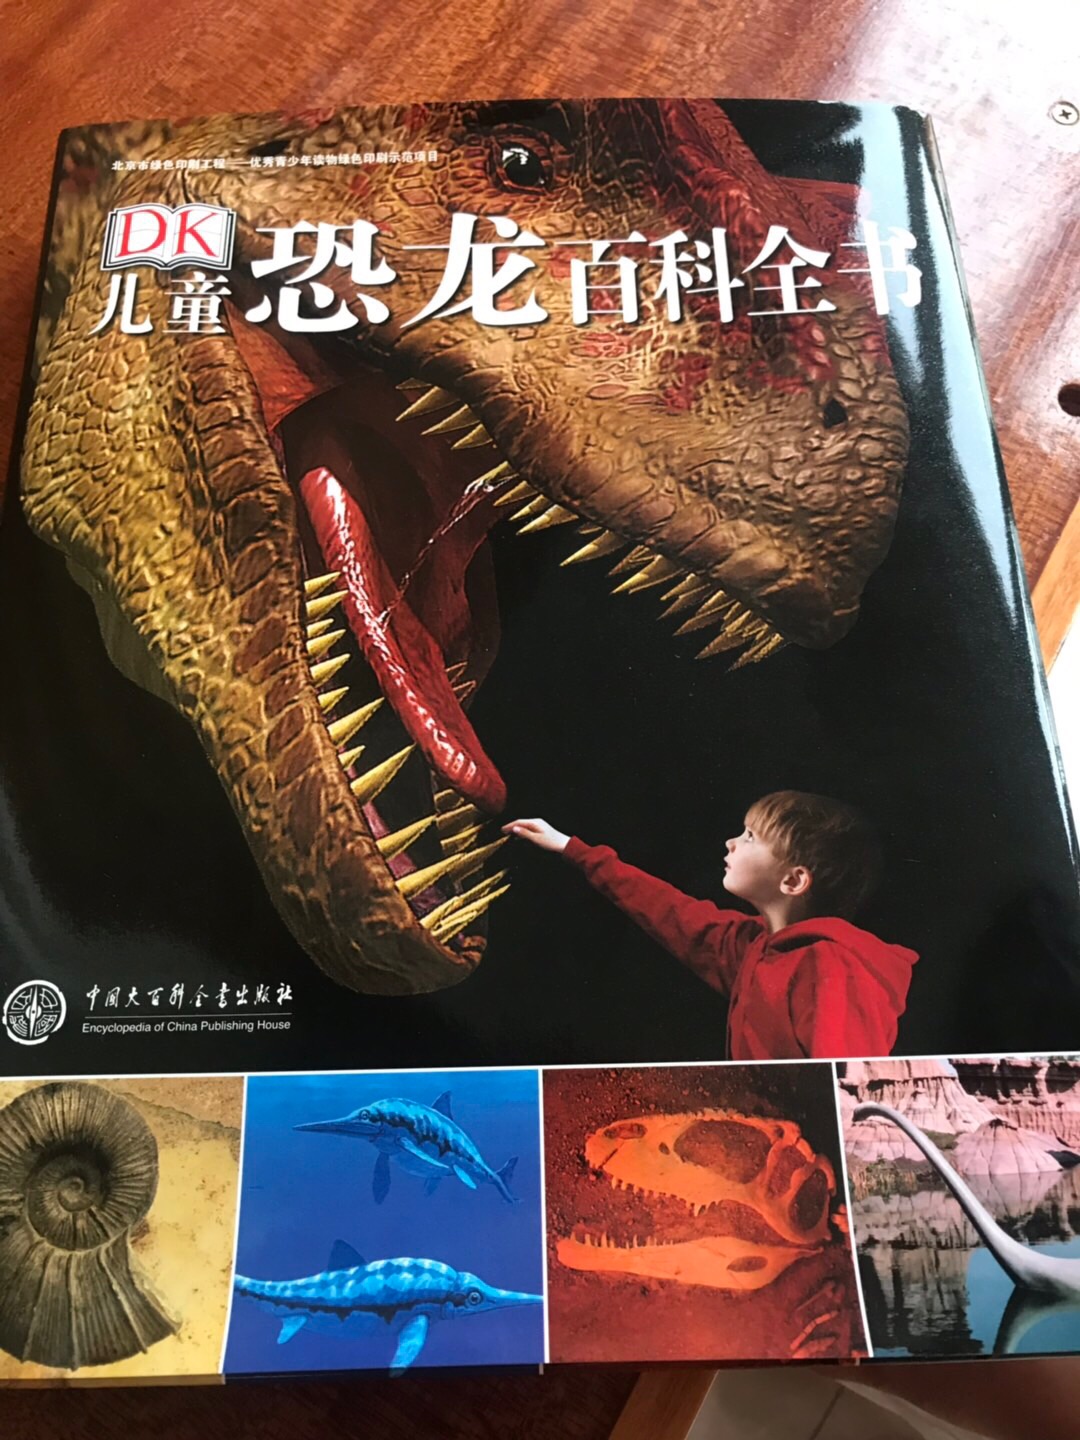 内容很丰富的一本书，图片多，内容细致，我家小朋友很喜欢恐龙，家里特地买了恐龙化石供她挖掘，配合书本讲解，效果很好。因为孩子总是充满想象力的，而恐龙是曾经存在过又彻底灭绝的超出想象的巨大生物，谁也没见过真的活着的恐龙。这两大特点会让孩子非常着迷，恐龙之于孩子，就像广袤的星空之于人类，有着无边的想象空间。